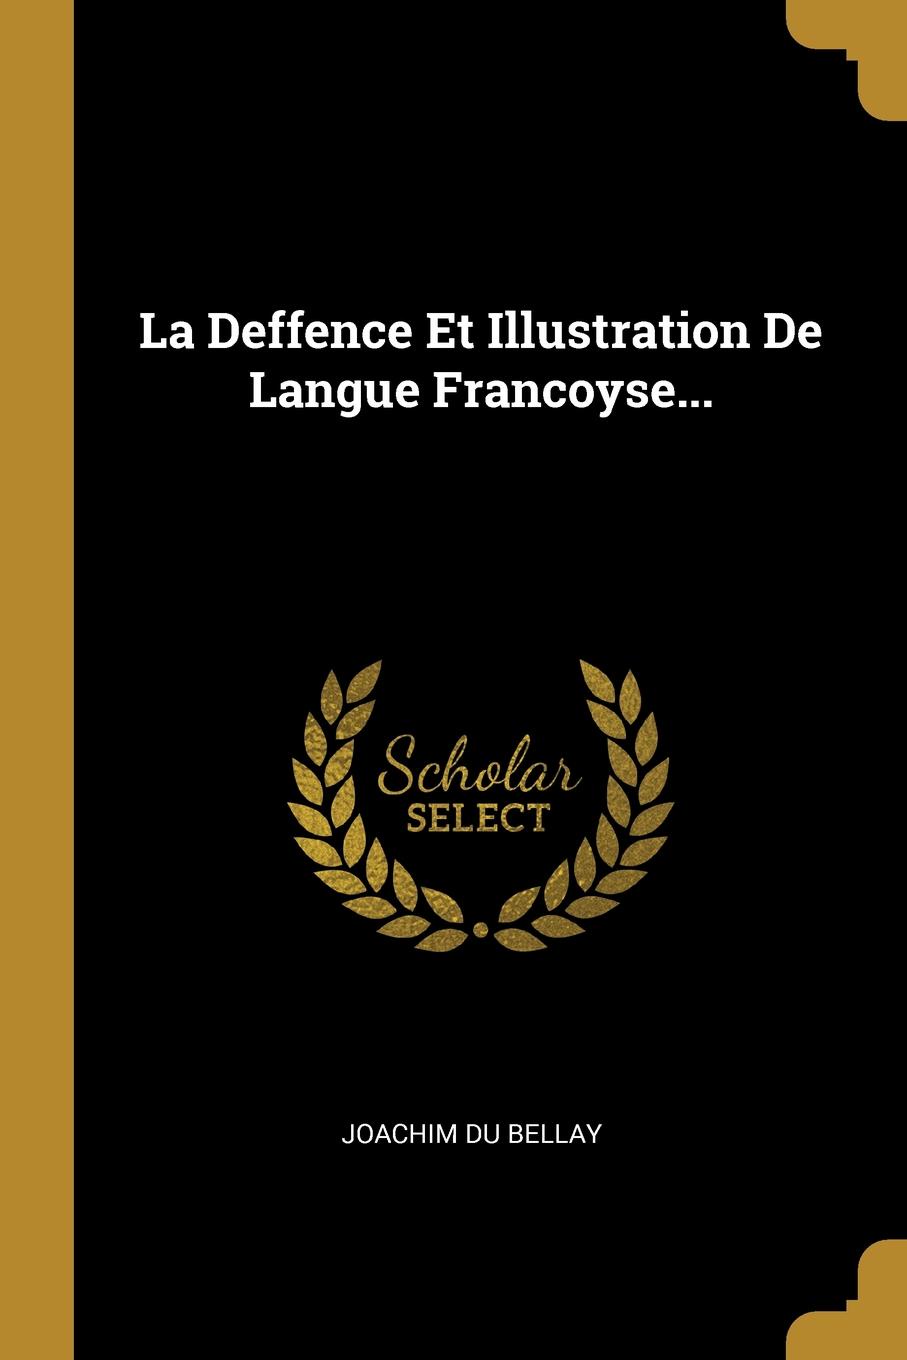 La Deffence Et Illustration De Langue Francoyse...